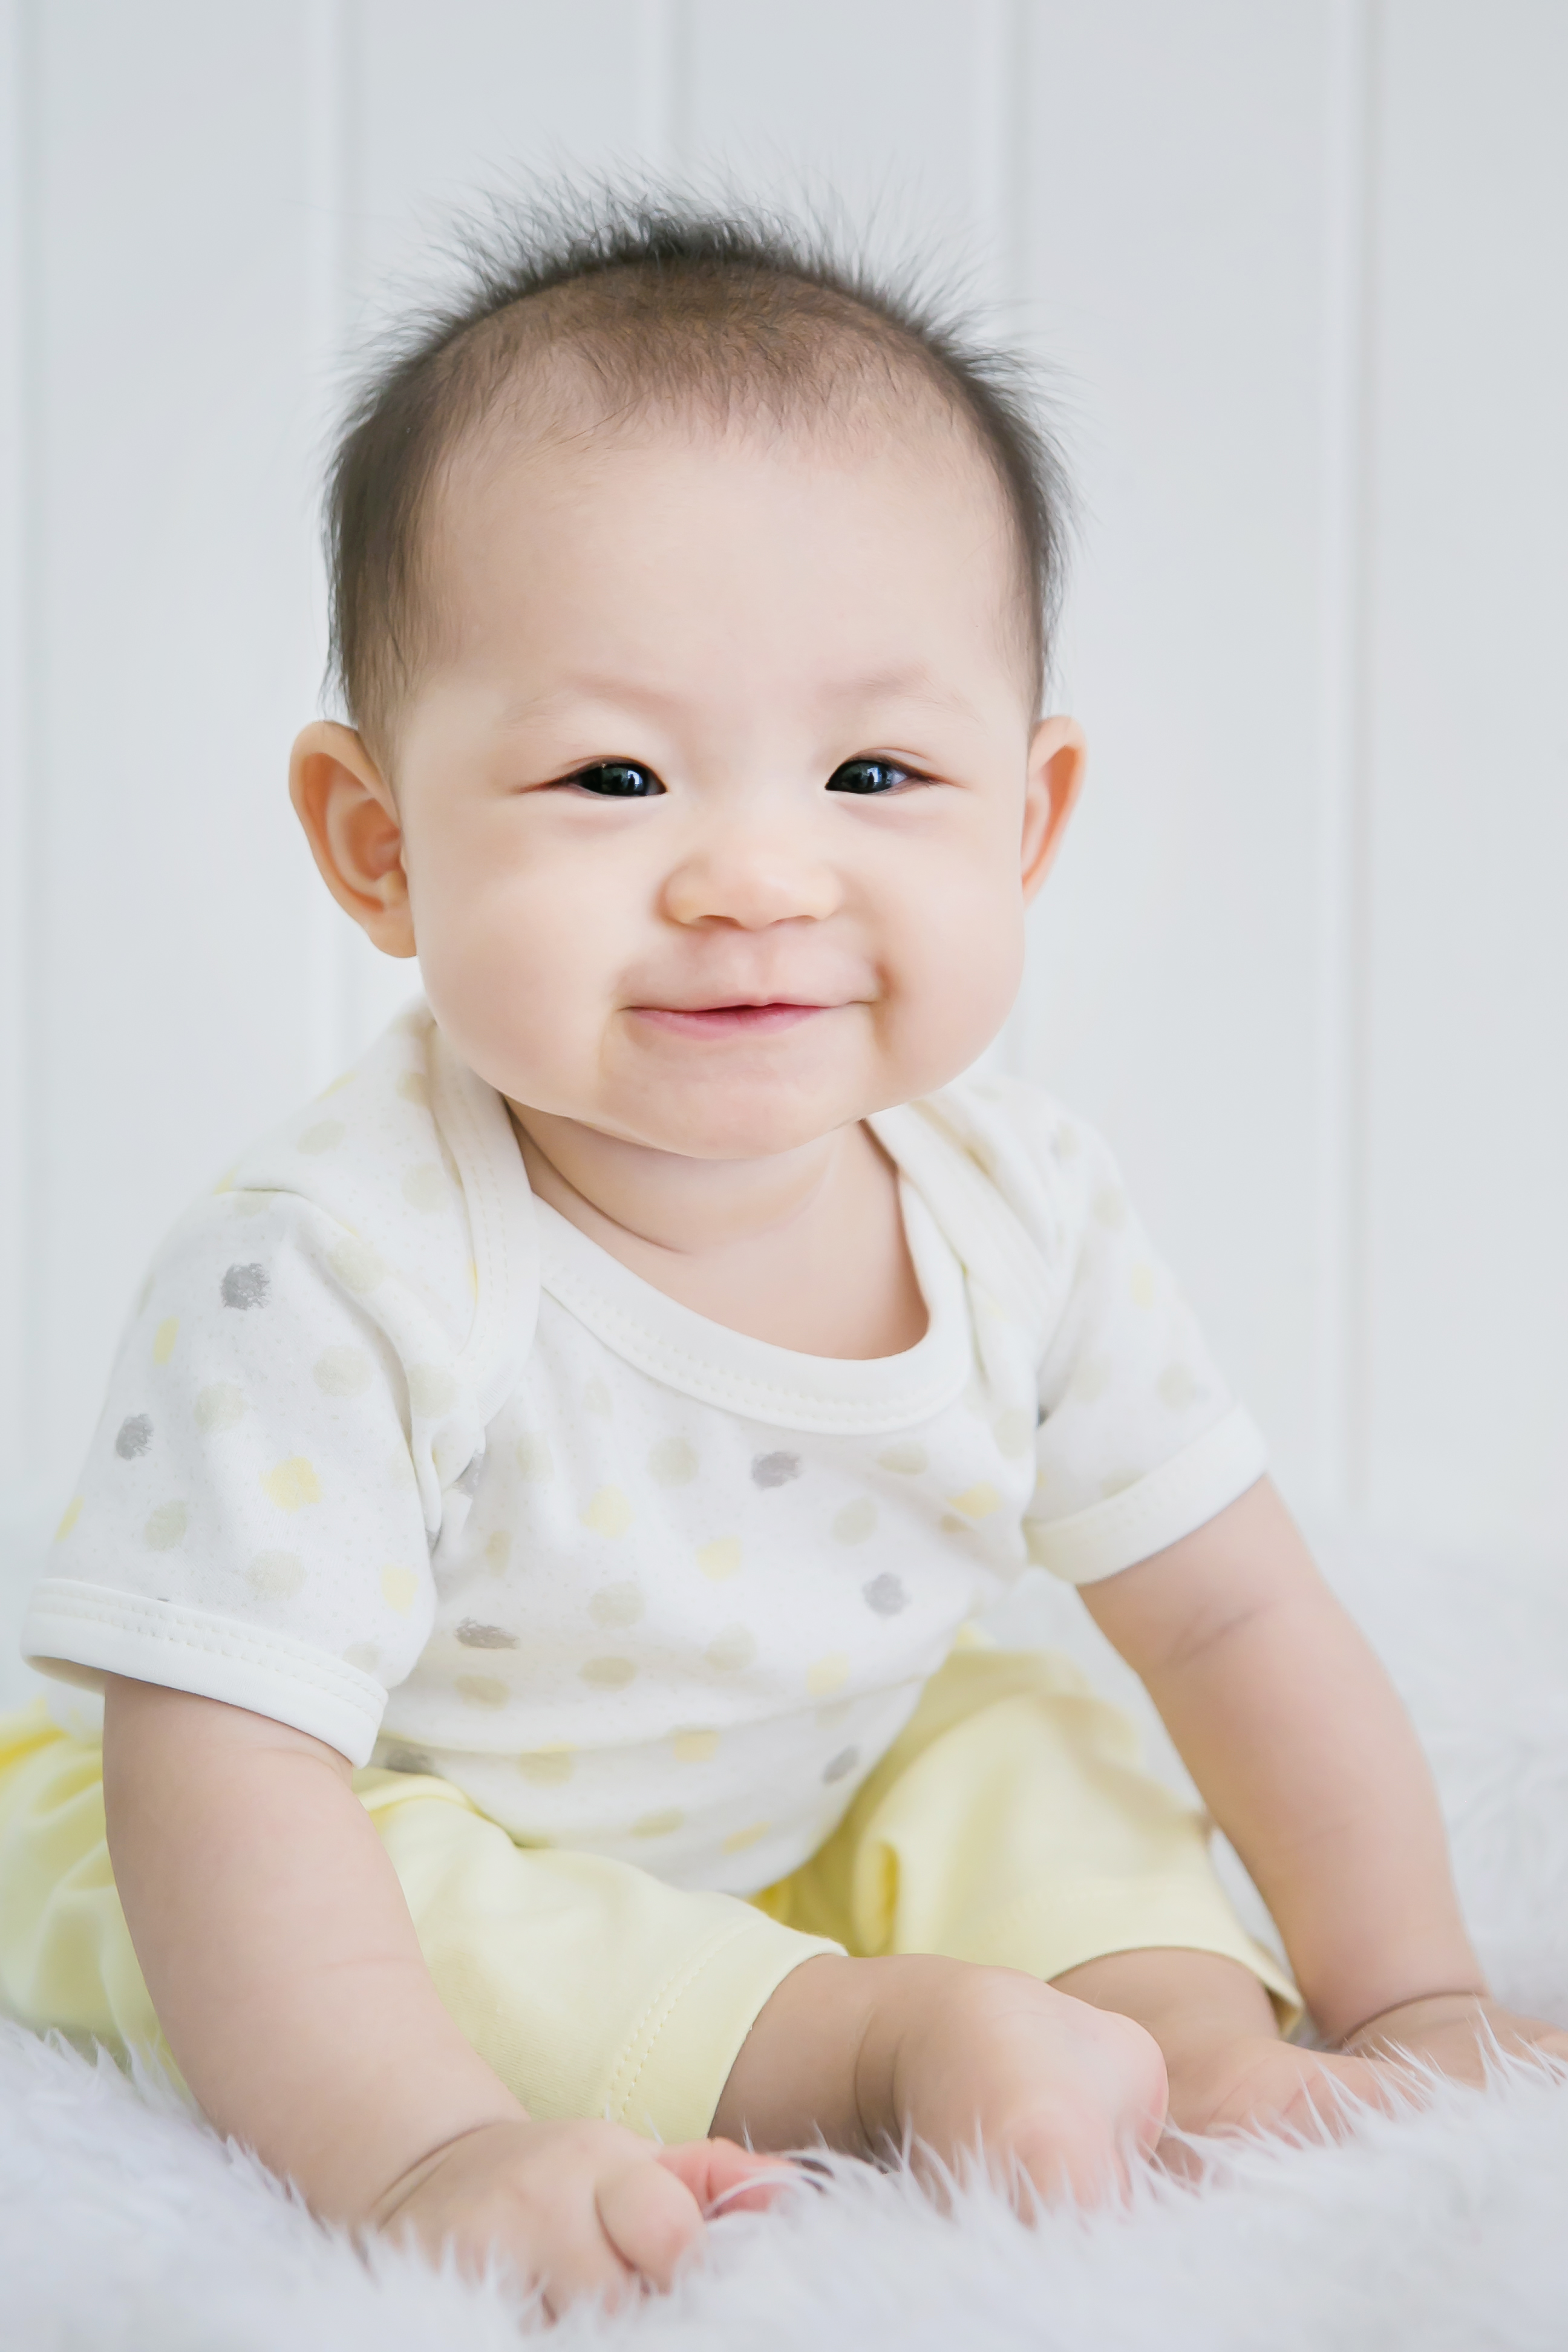 Baby Bright Newborn Baby Boy Clothes Essentials Shower Gift Set - 14 Pieces, 0-3 Months - image 5 of 6